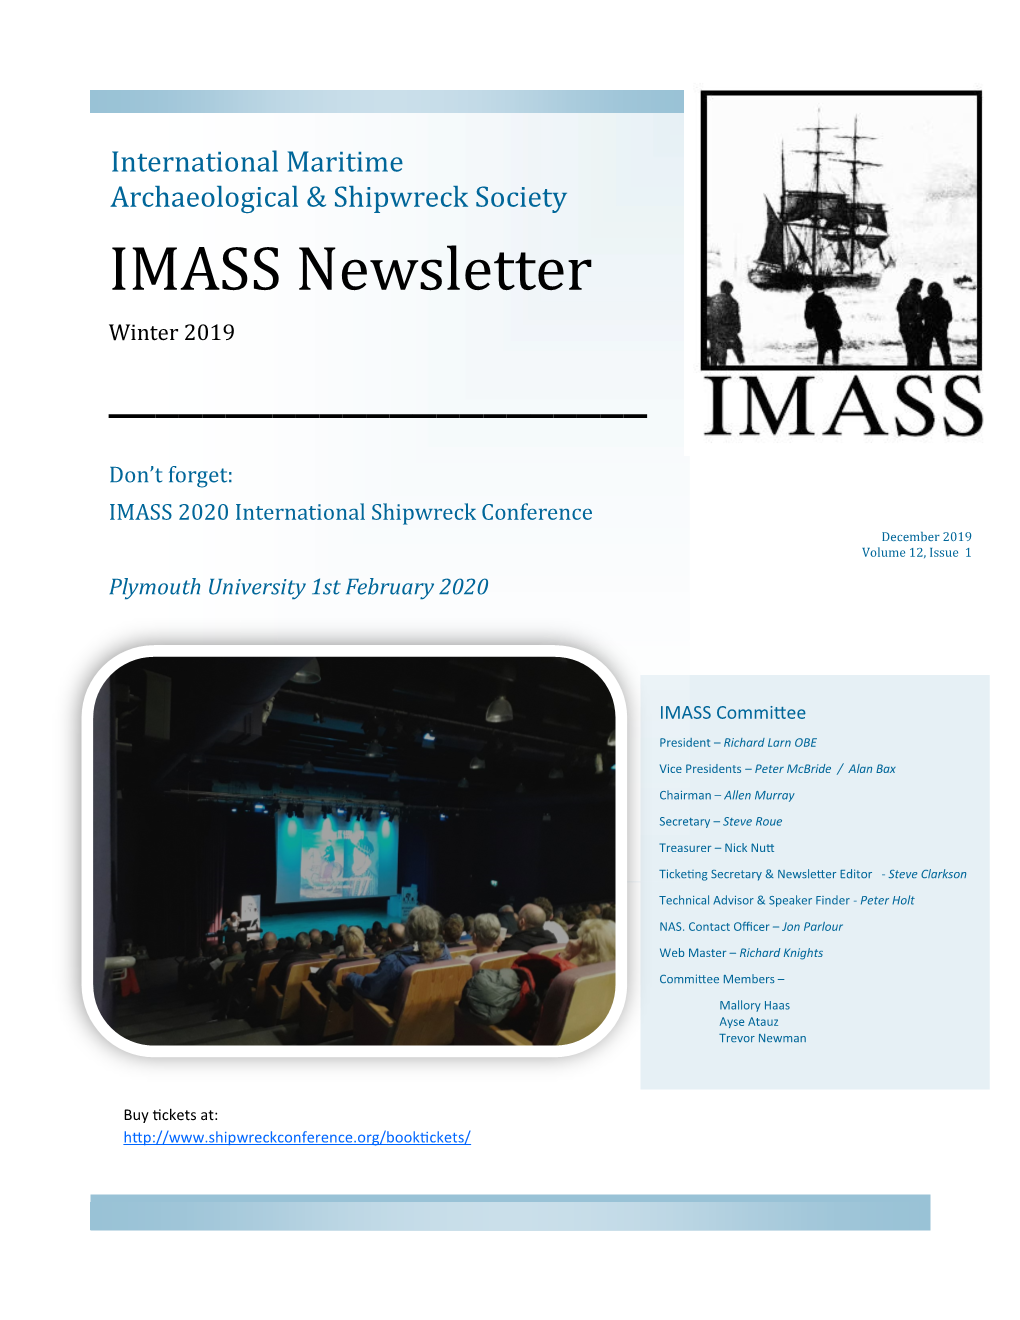 IMASS Newsletter Winter 2019 ______